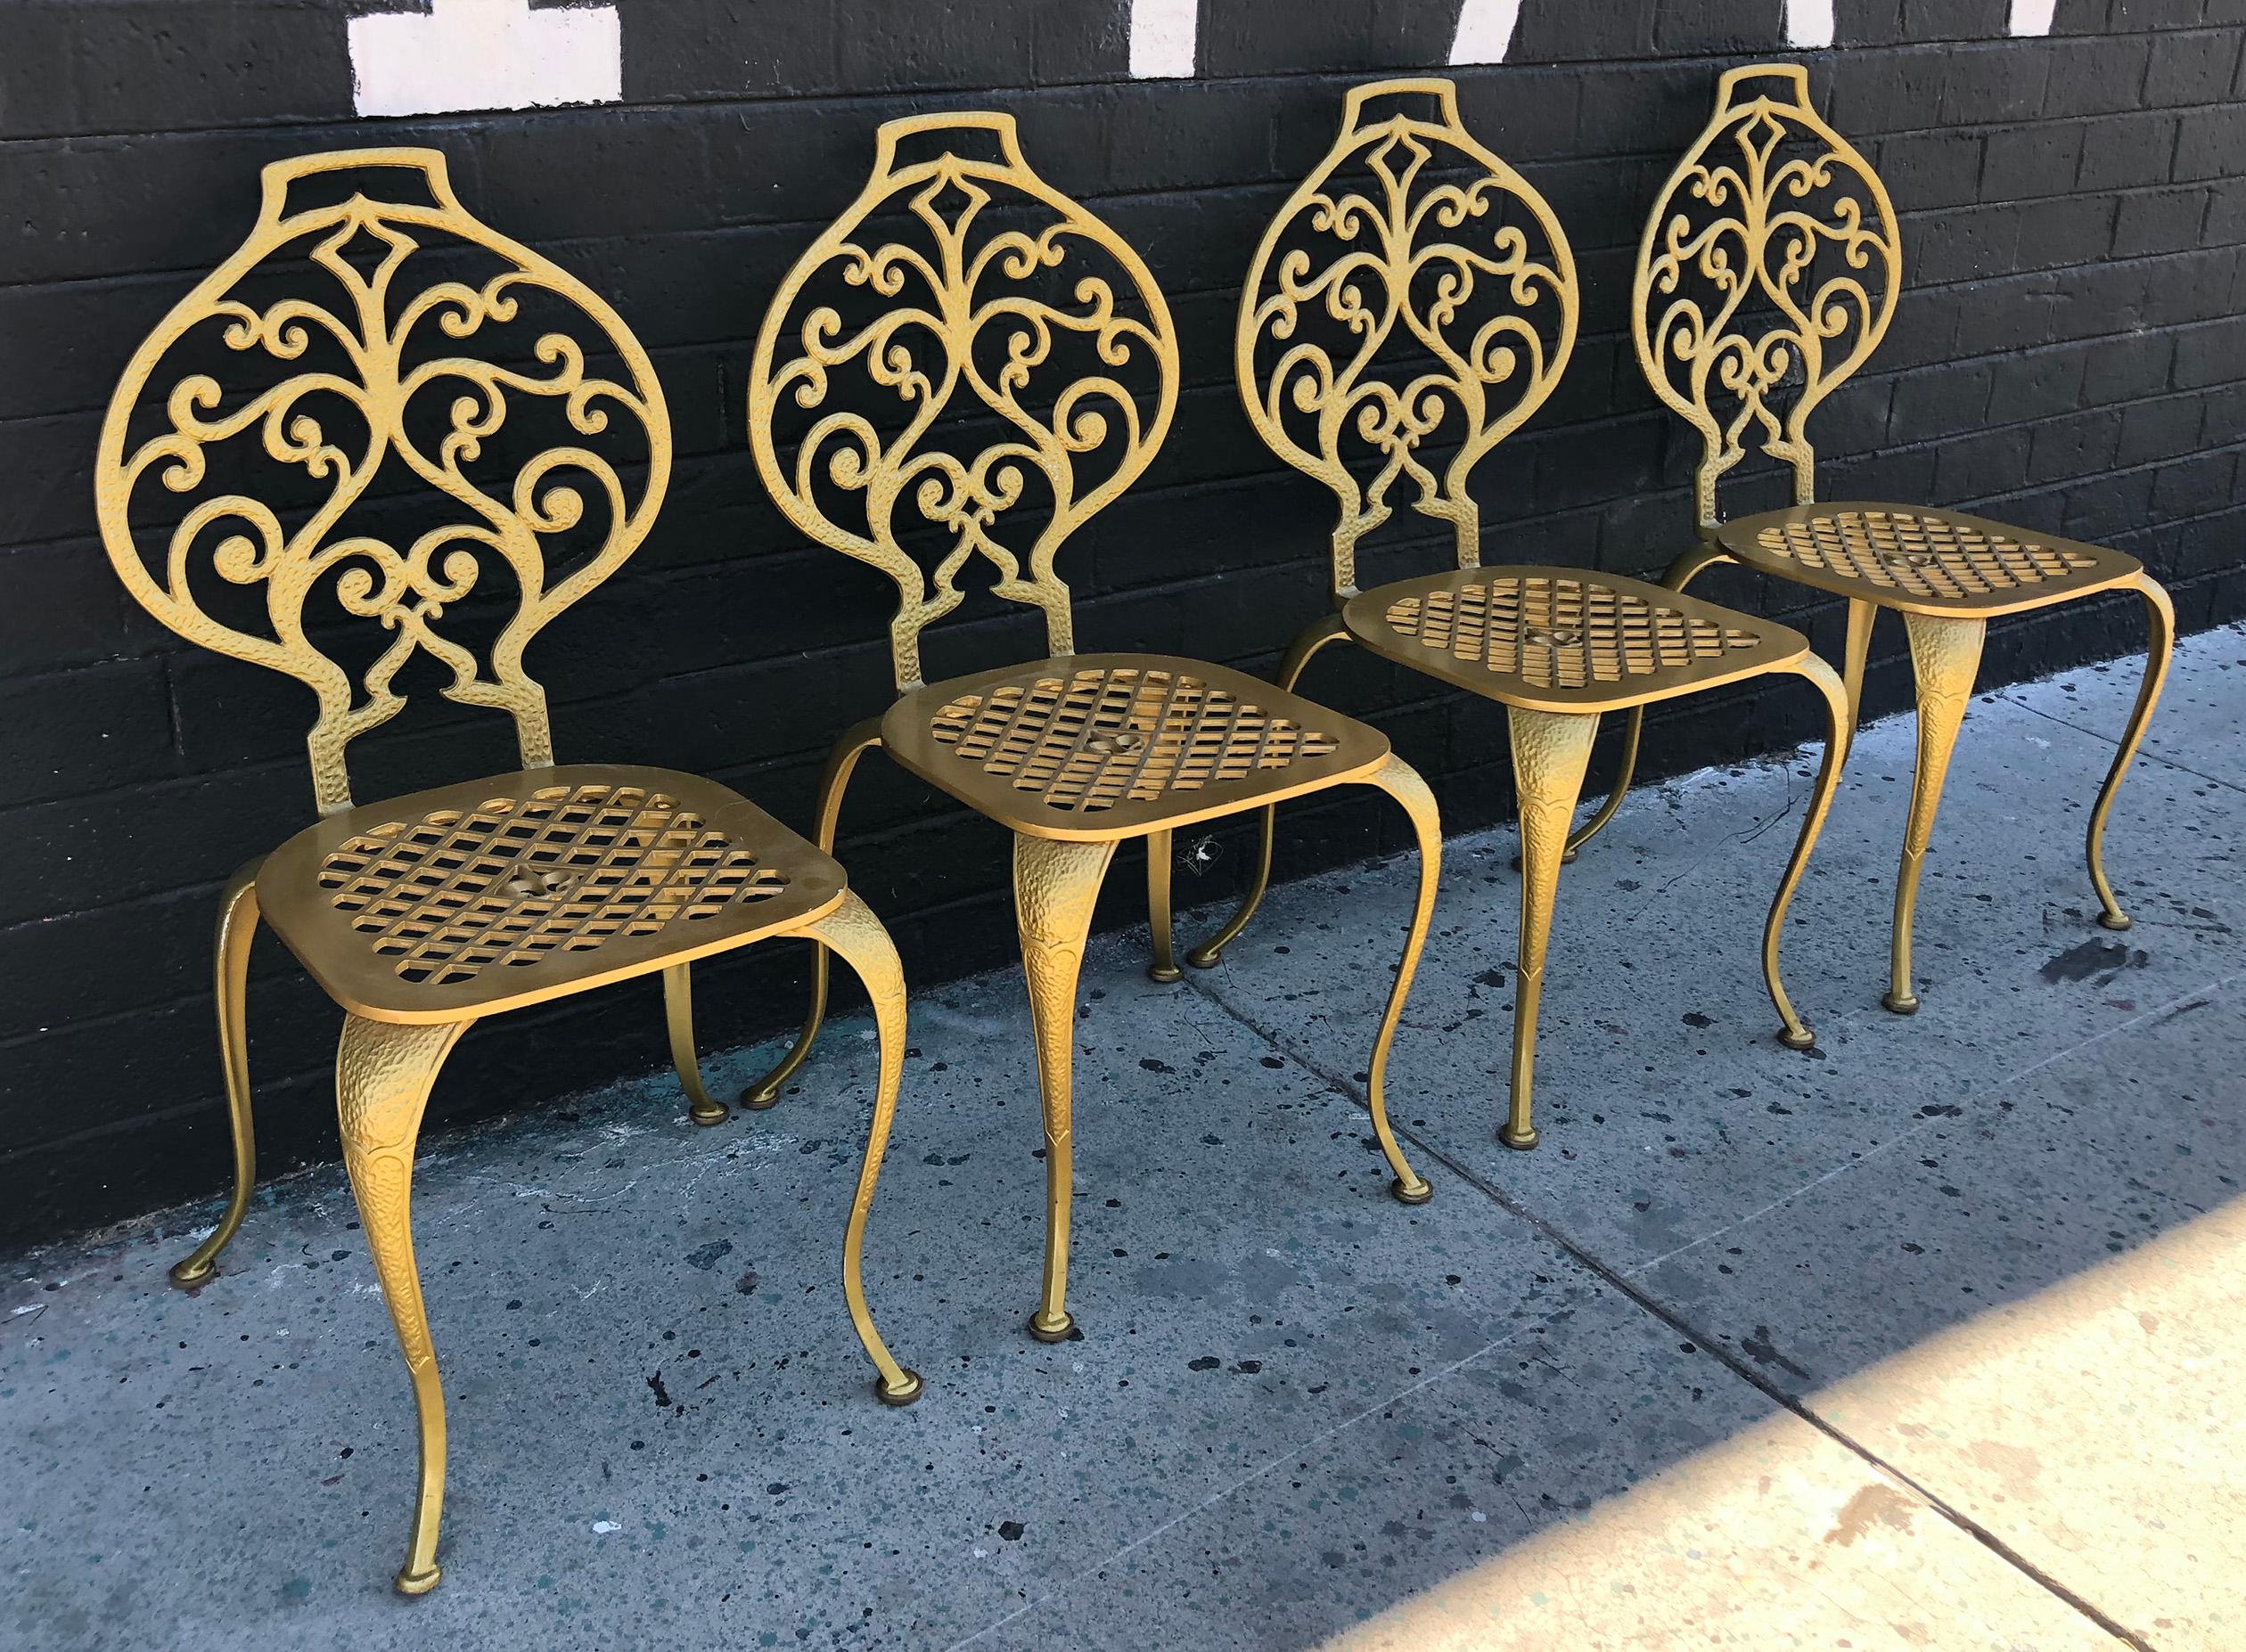 Un ensemble absolument stupéfiant de 4 chaises de salle à manger Thinline. Les chaises ont un corps en aluminium solide et présentent un magnifique motif de fleur de lys sur les sièges. 

Ces chaises étaient destinées à être utilisées à